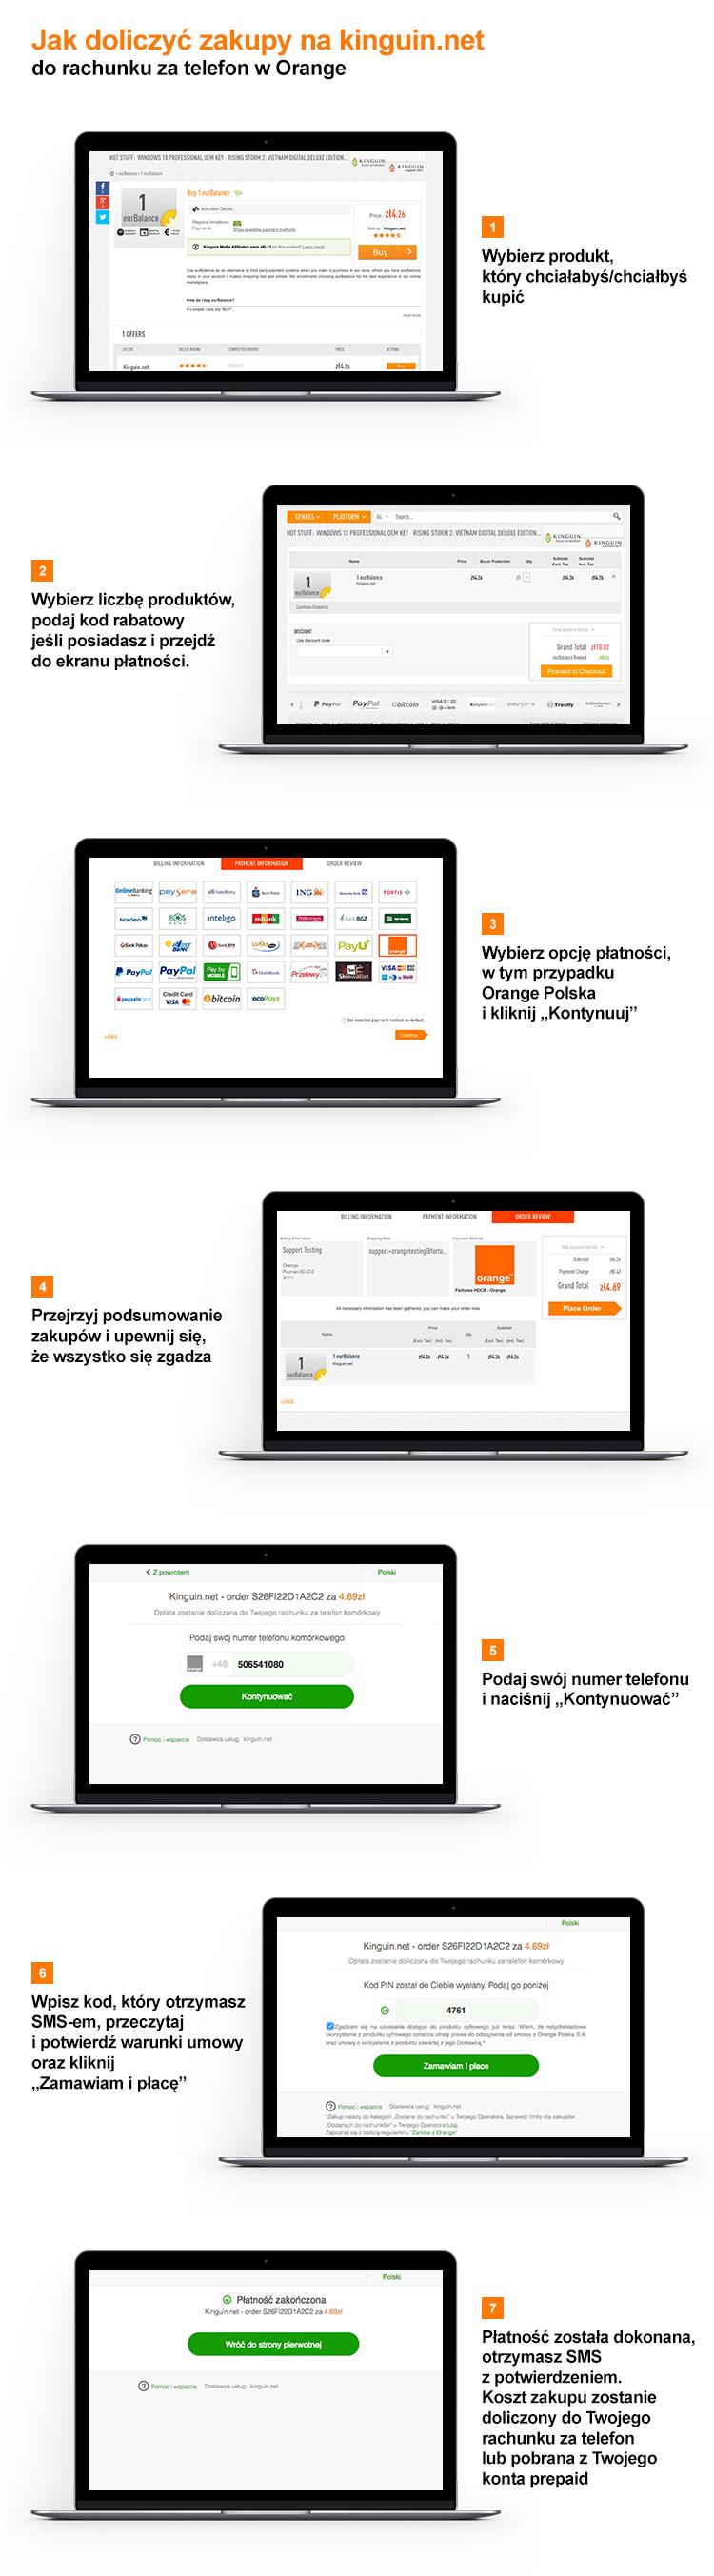 Jak doliczyć zakupy na kinguin.net do rachunku za telefon w Orange.  Krok 1: Wybierz produkt, który chciałabyś/chciałbyś kupić.  Krok 2: Wybierz liczbę produktów, podaj kod rabatowy i przejdź do ekranu płatności Krok 3: Wybierz opcję płatności, w tym przypadku Orange Polska i kliknij "kontynuuj"  Krok 4: Przejrzyj podsumowanie zakupów i upewnij się, że wszystko sie zgadza.  Krok 5: Podaj swój numer telefonu i naciśnij przycisk "kontynuować"  Krok 6: Wpisz kod, który otrzymasz SMS-em, potwierdź, że przeczytałeś/aś warunki umowy i kliknij "Zamawiam i płacę" Krok 7: Płatność została dokonana, otrzymasz SMS z potwierdzeniem. Koszt zakupu zostanie doliczony do Twojego rachunku za telefon lub pobrana z Twojego konta prepaid. 